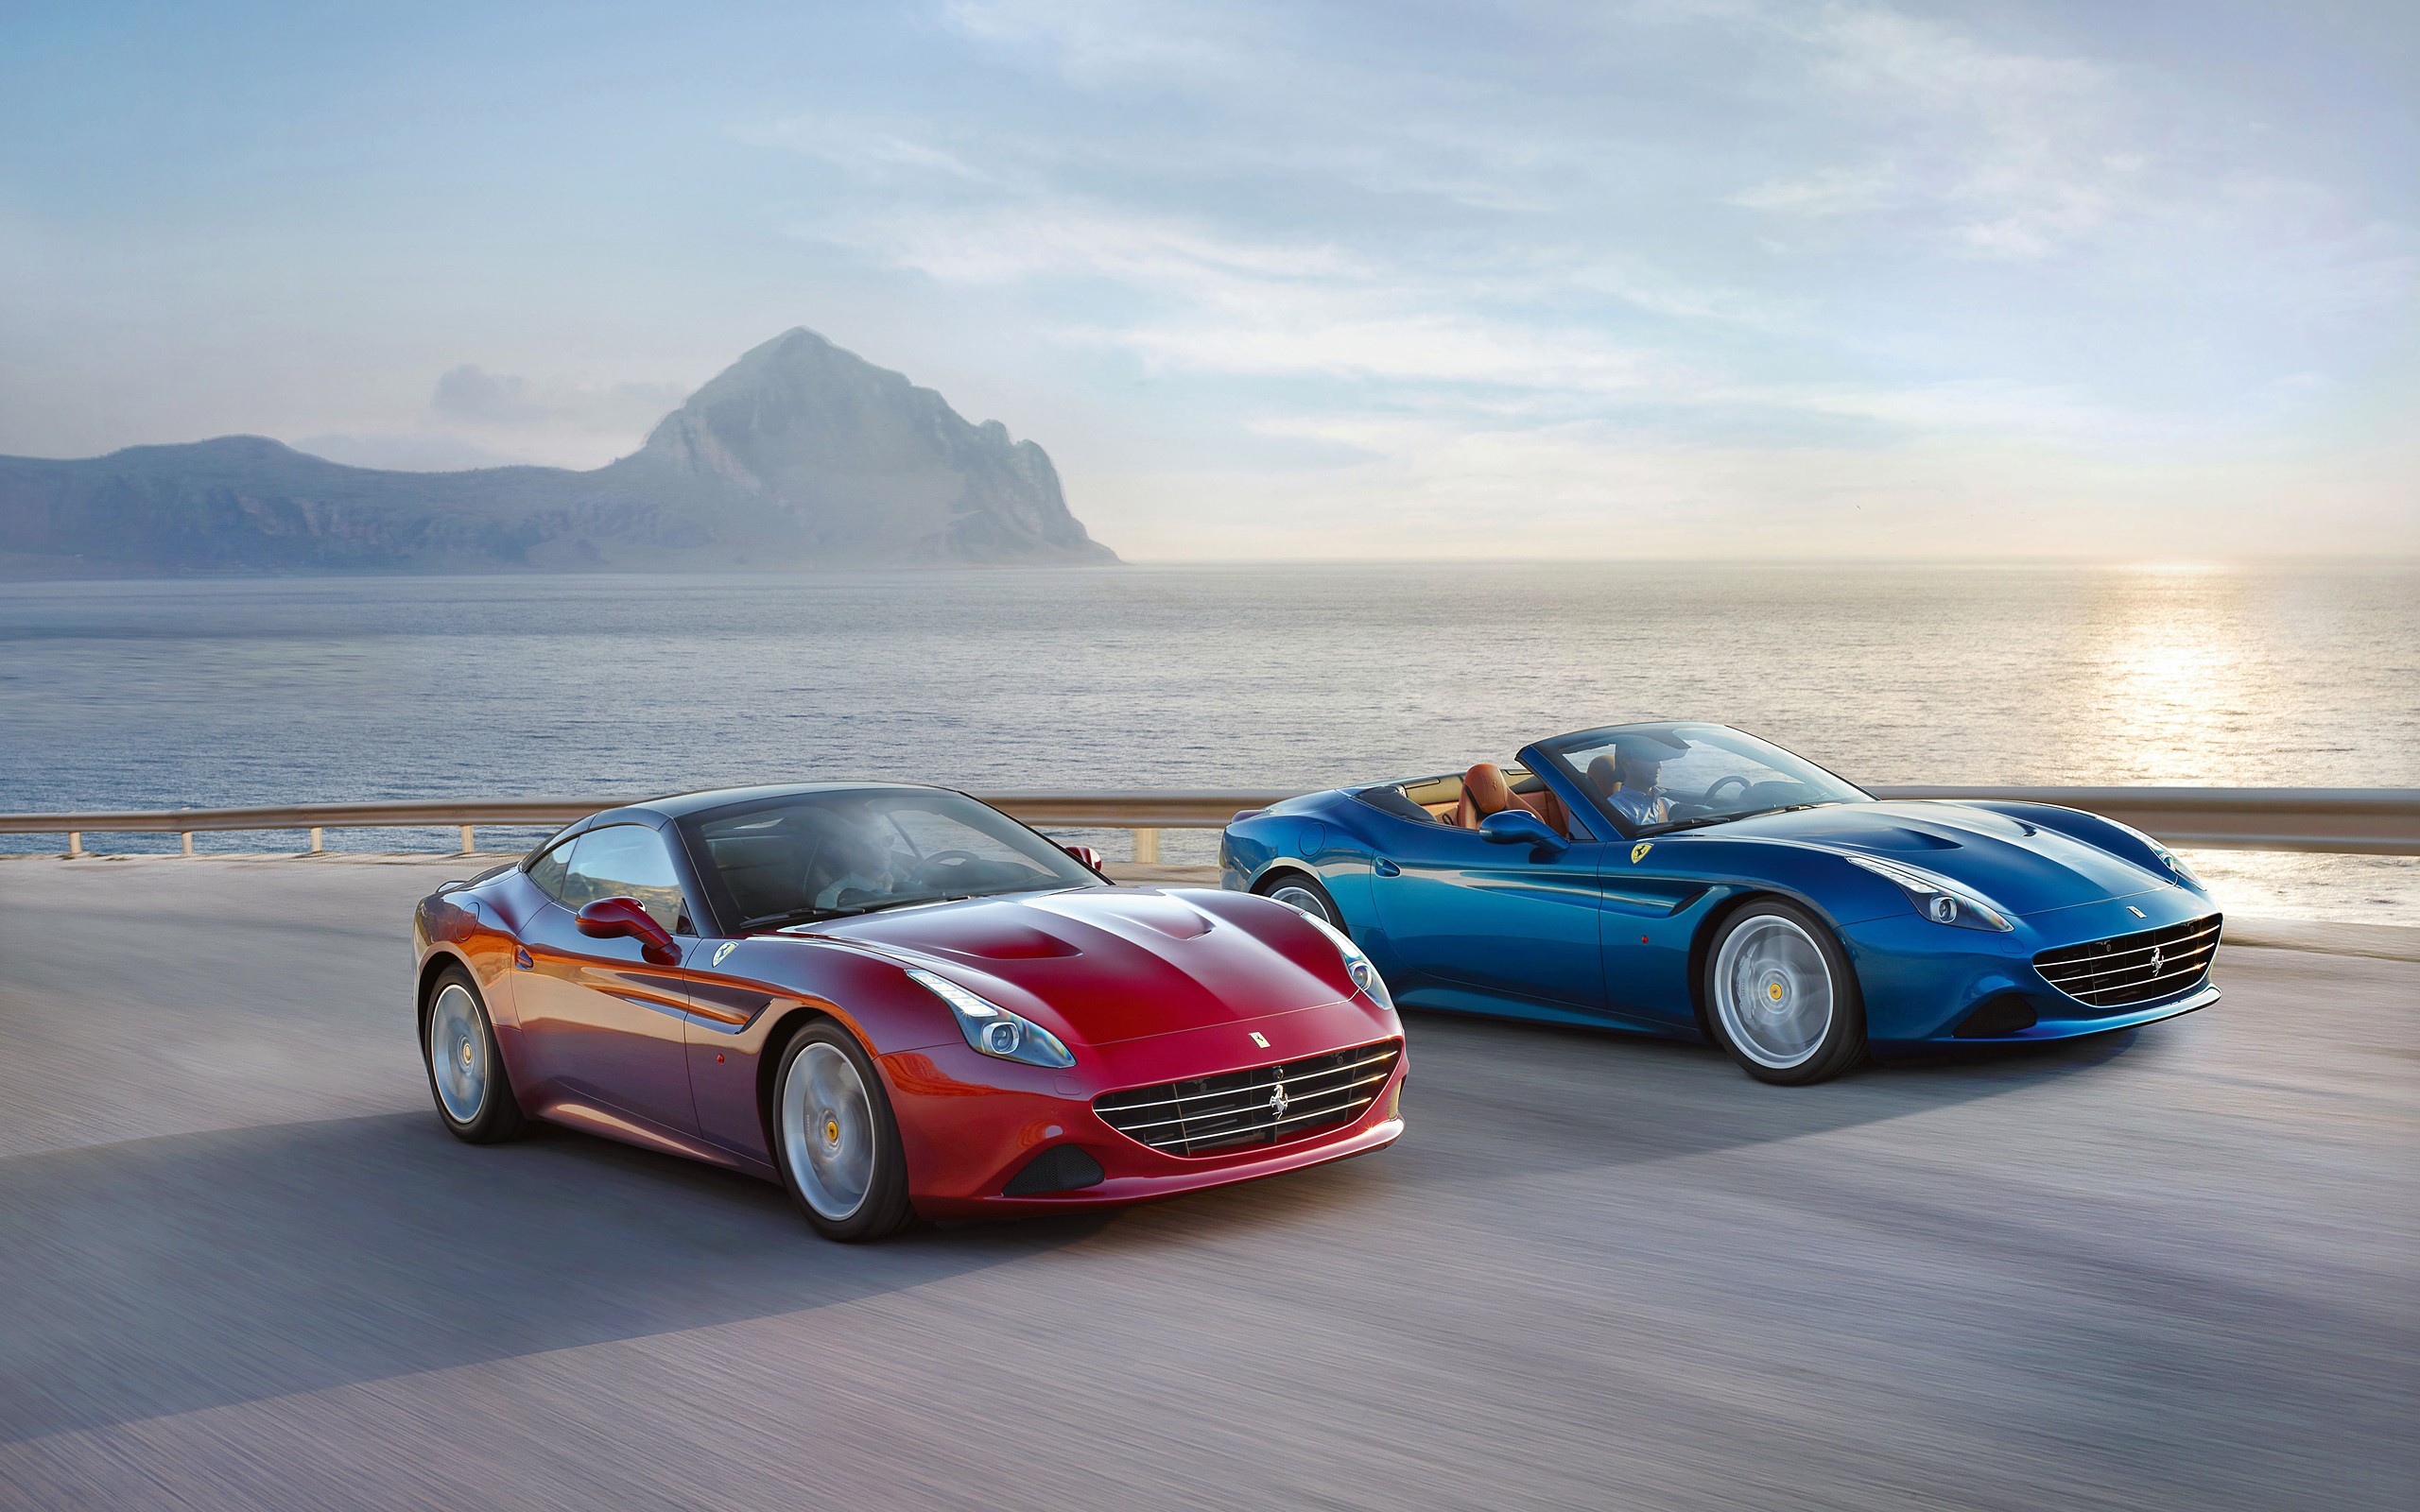 Ferrari California T, Convertible, Road, Sea, Sunset, Car Wallpaper